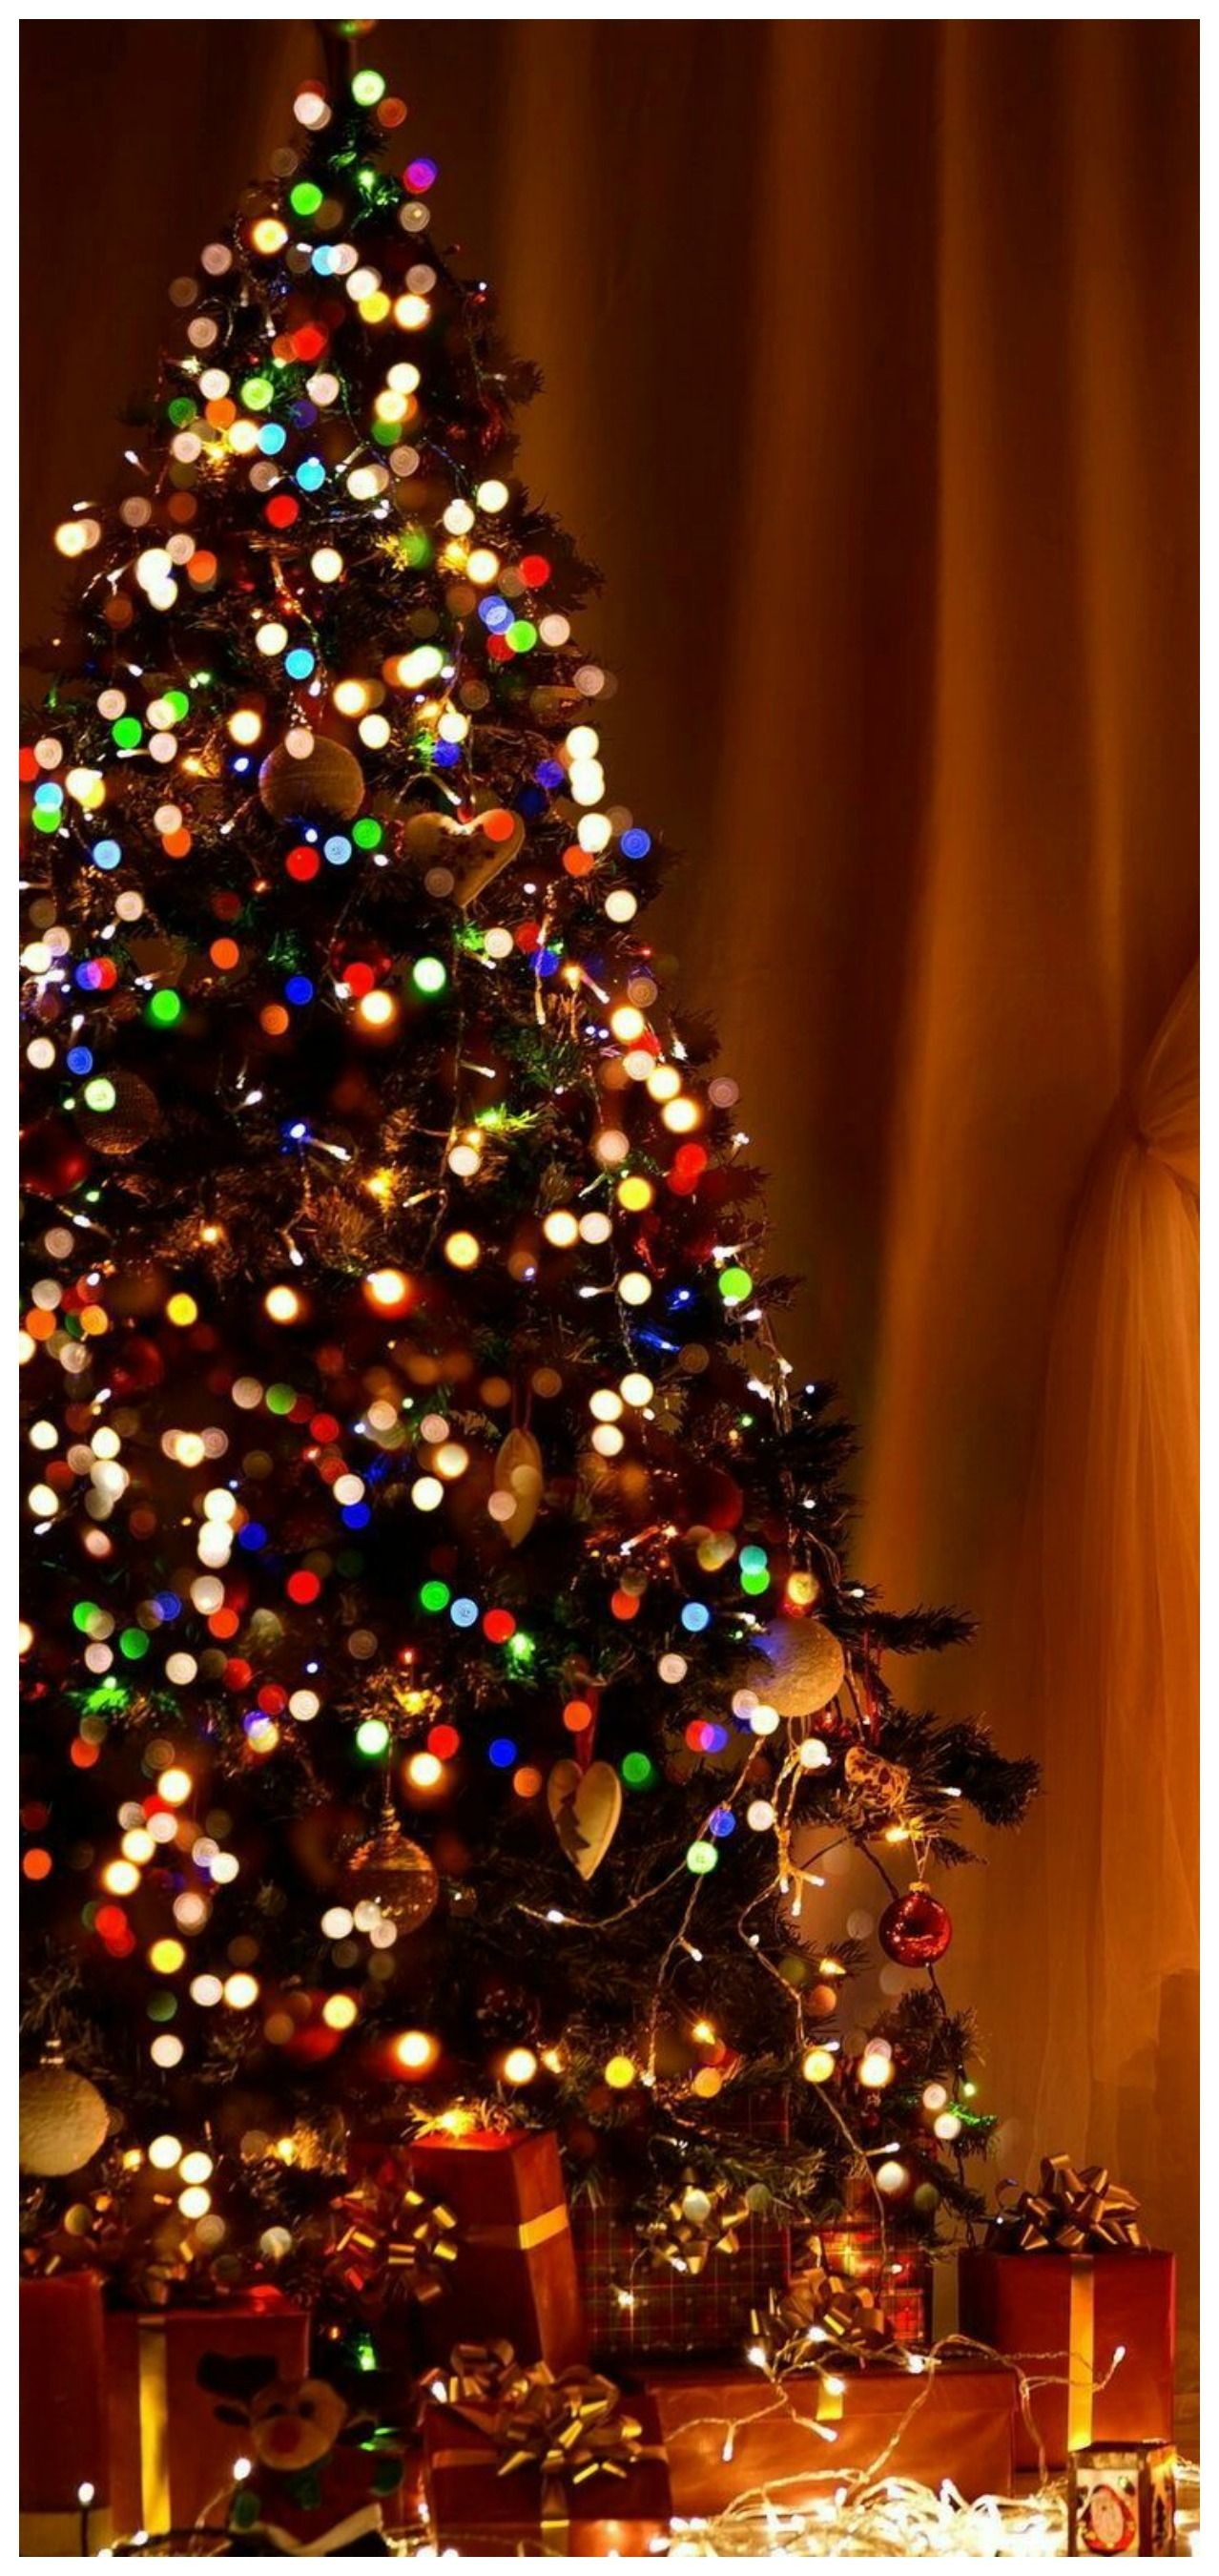 weihnachtstapete tumblr,weihnachtsbaum,weihnachtsdekoration,baum,weihnachtsschmuck,weihnachten